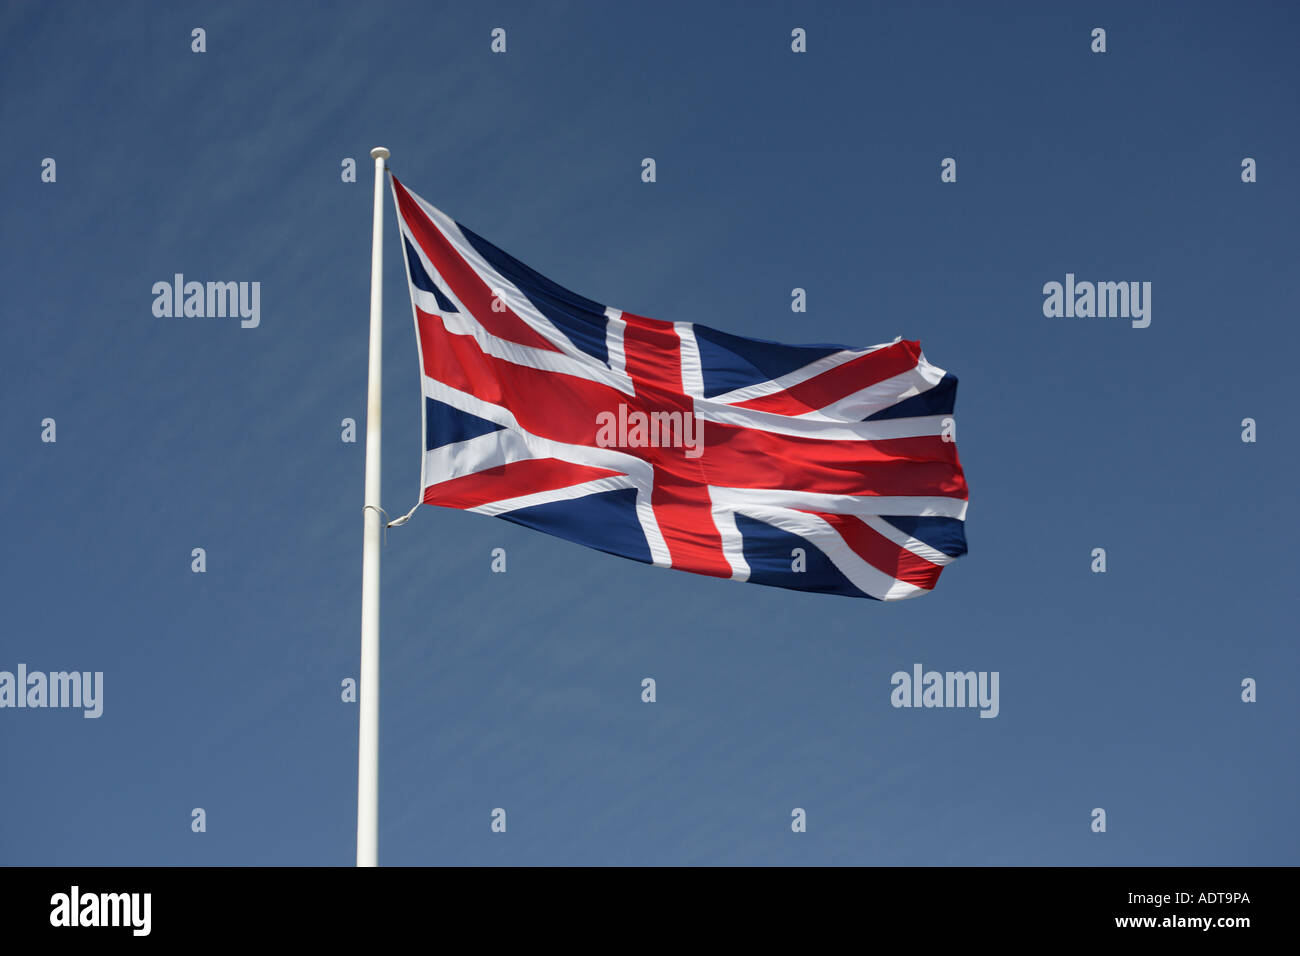 British Union flag fluttering on flagpole Union Jack Stock Photo